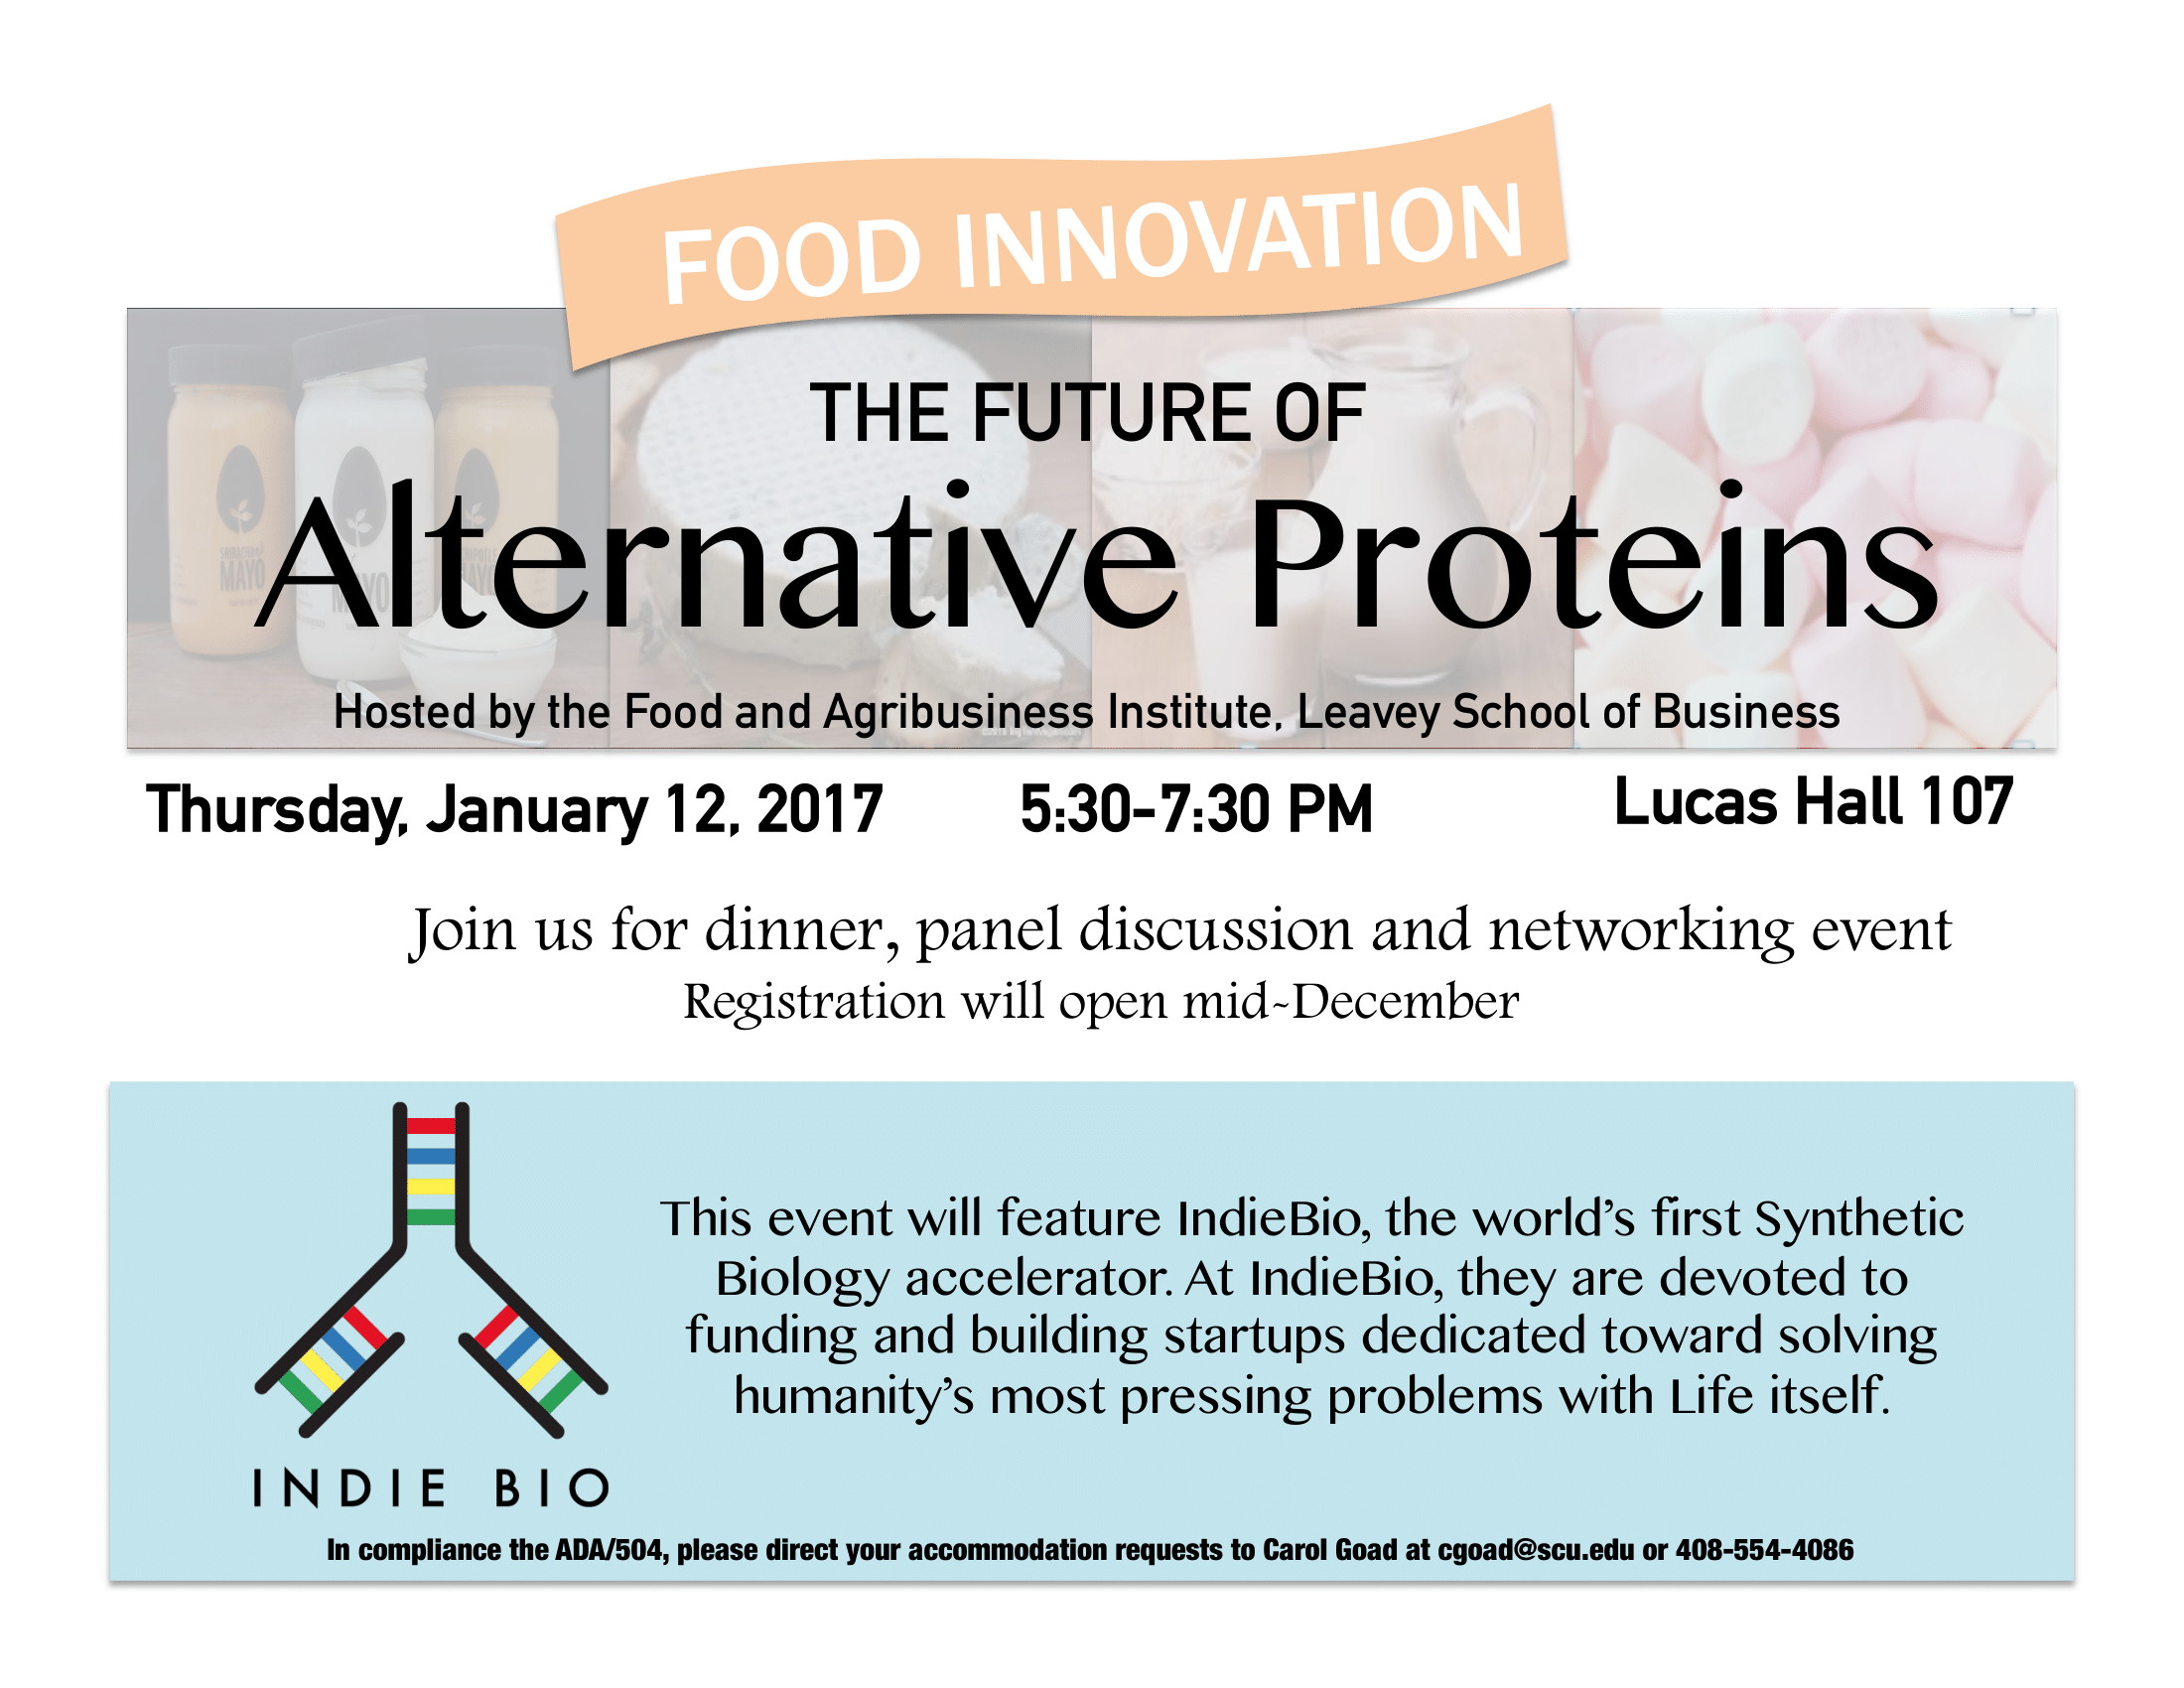 Alt. Proteins part 2 event flyer